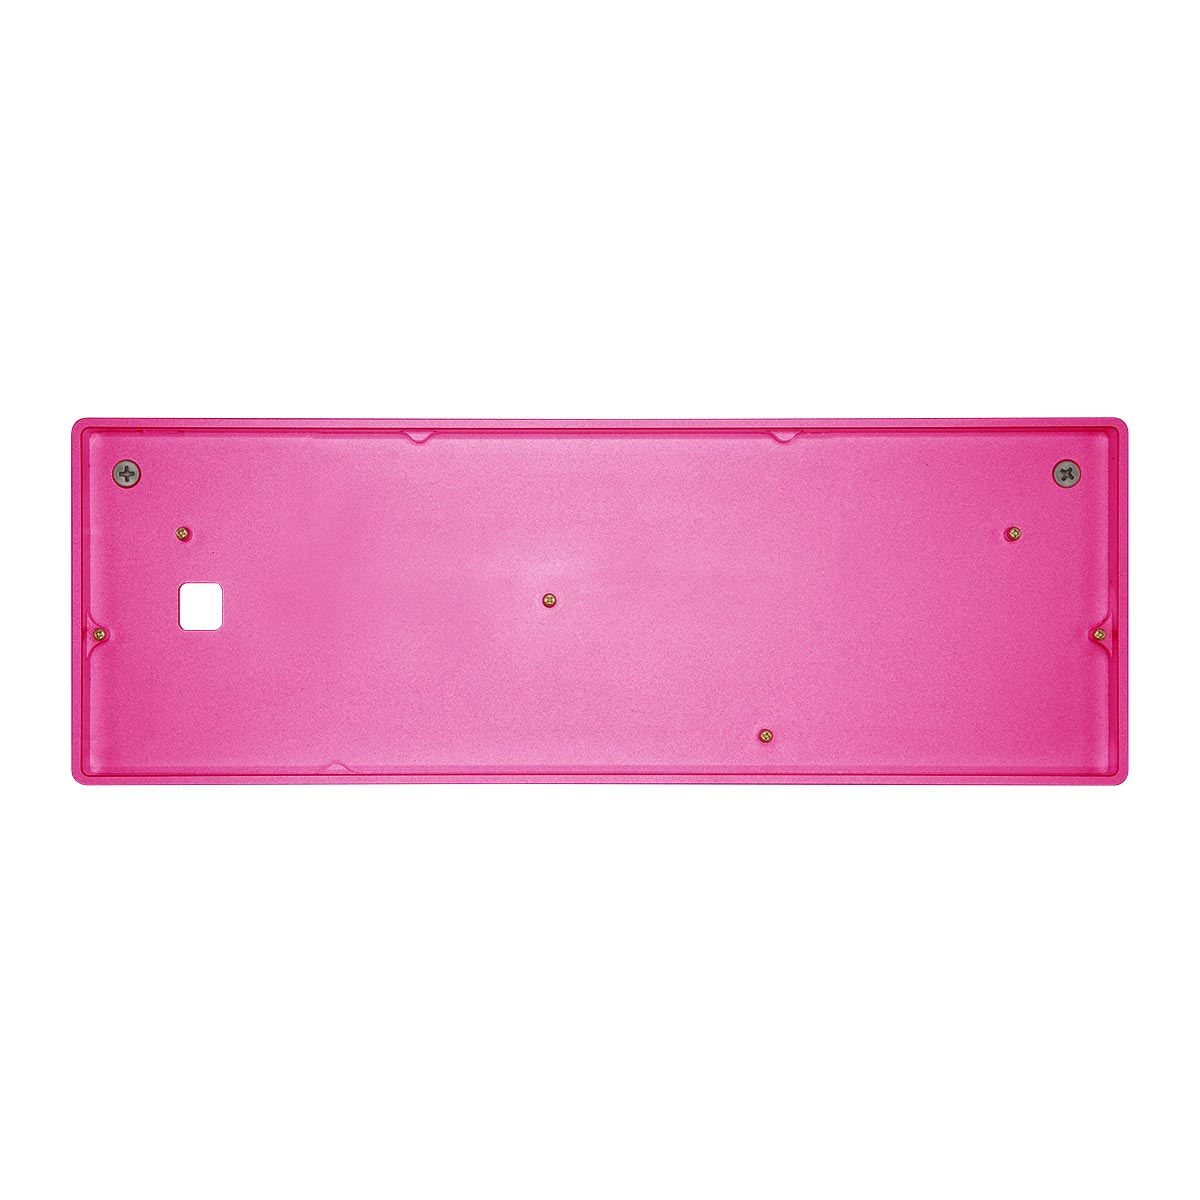 Aluminum 60% Base - Pink » 1upkeyboards